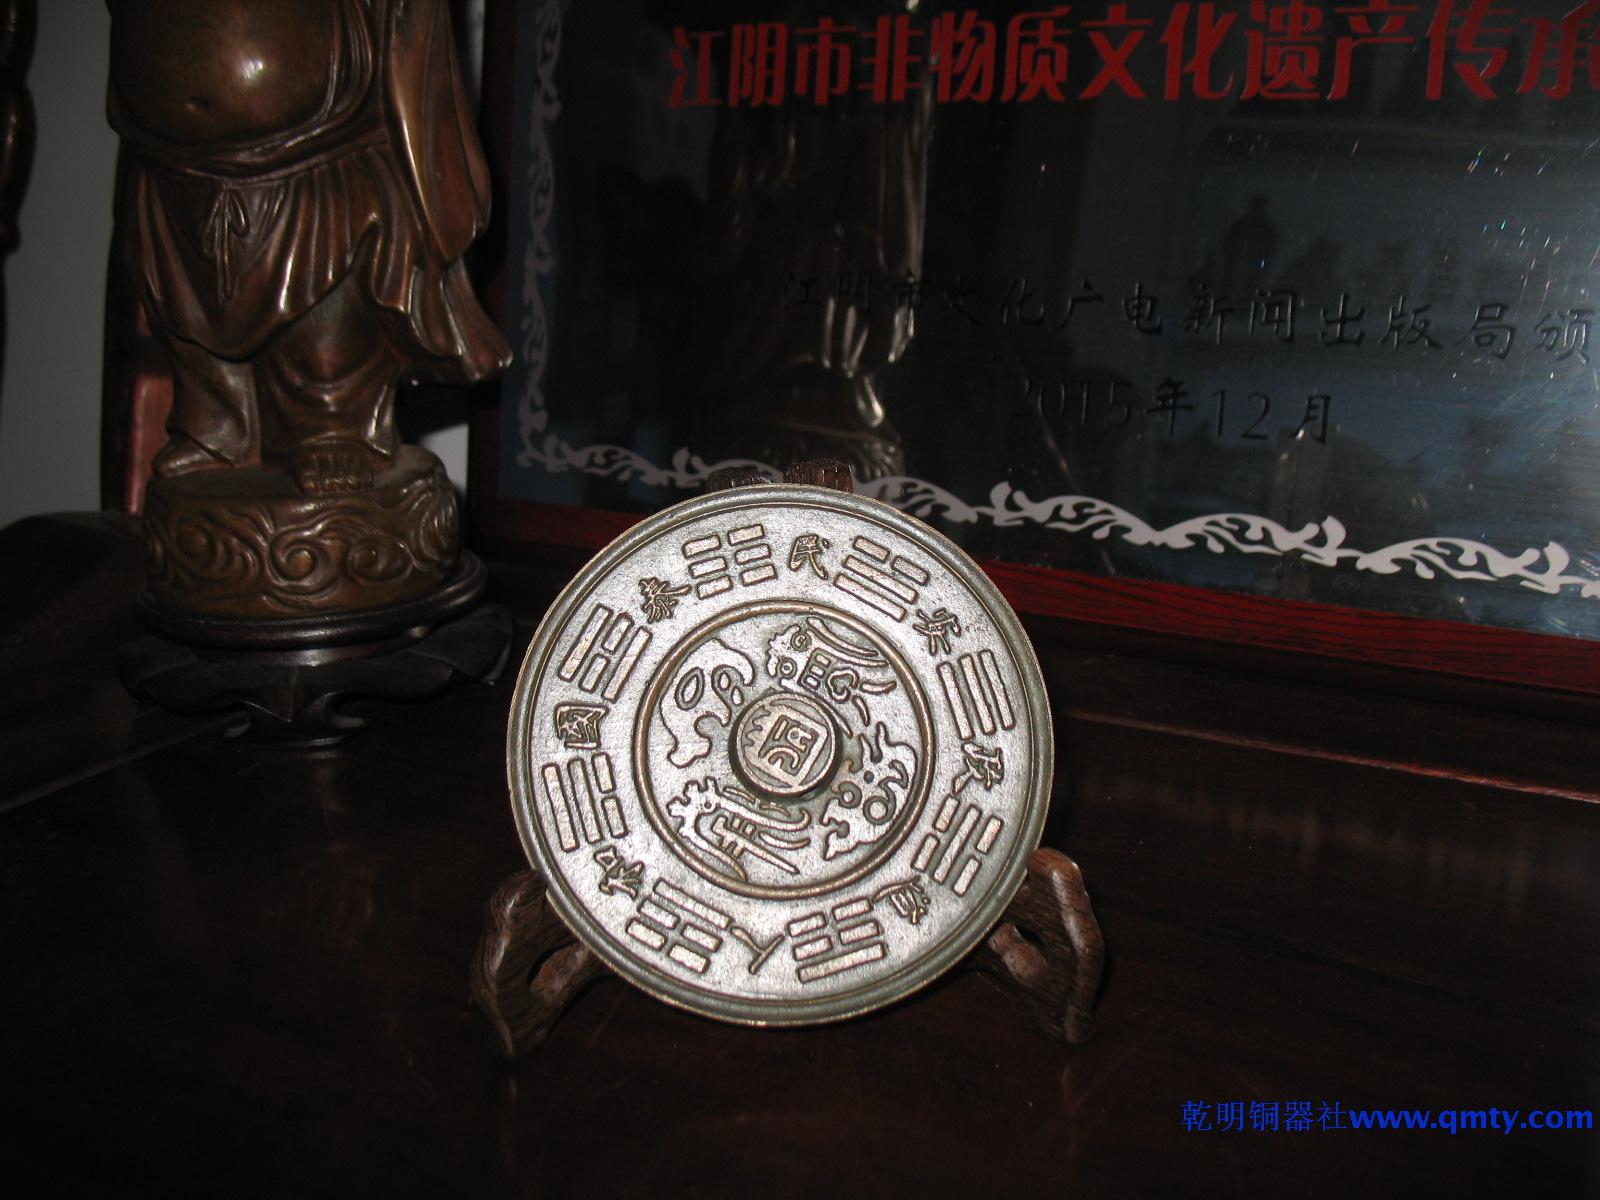 仿古青铜器工艺品透光镜生肖铜镜生日庆典礼品准提透光镜青铜镜- Taobao